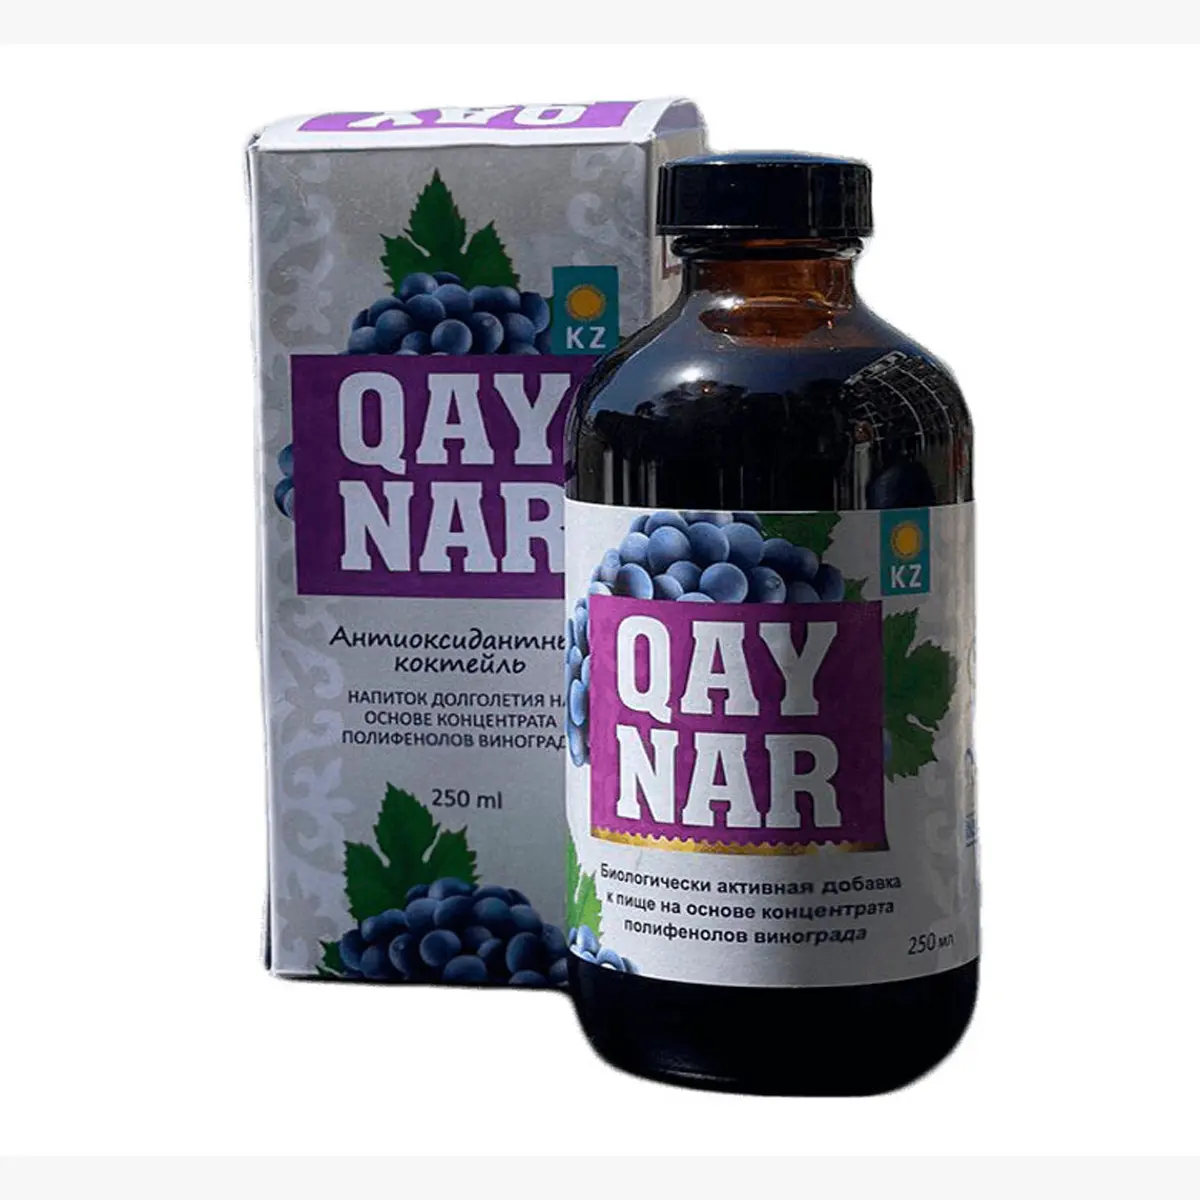 ブドウ種子ポリフェノール濃縮物「QAYNAR」ガラス瓶入り生物活性食品サプリメント、カザフスタン製品